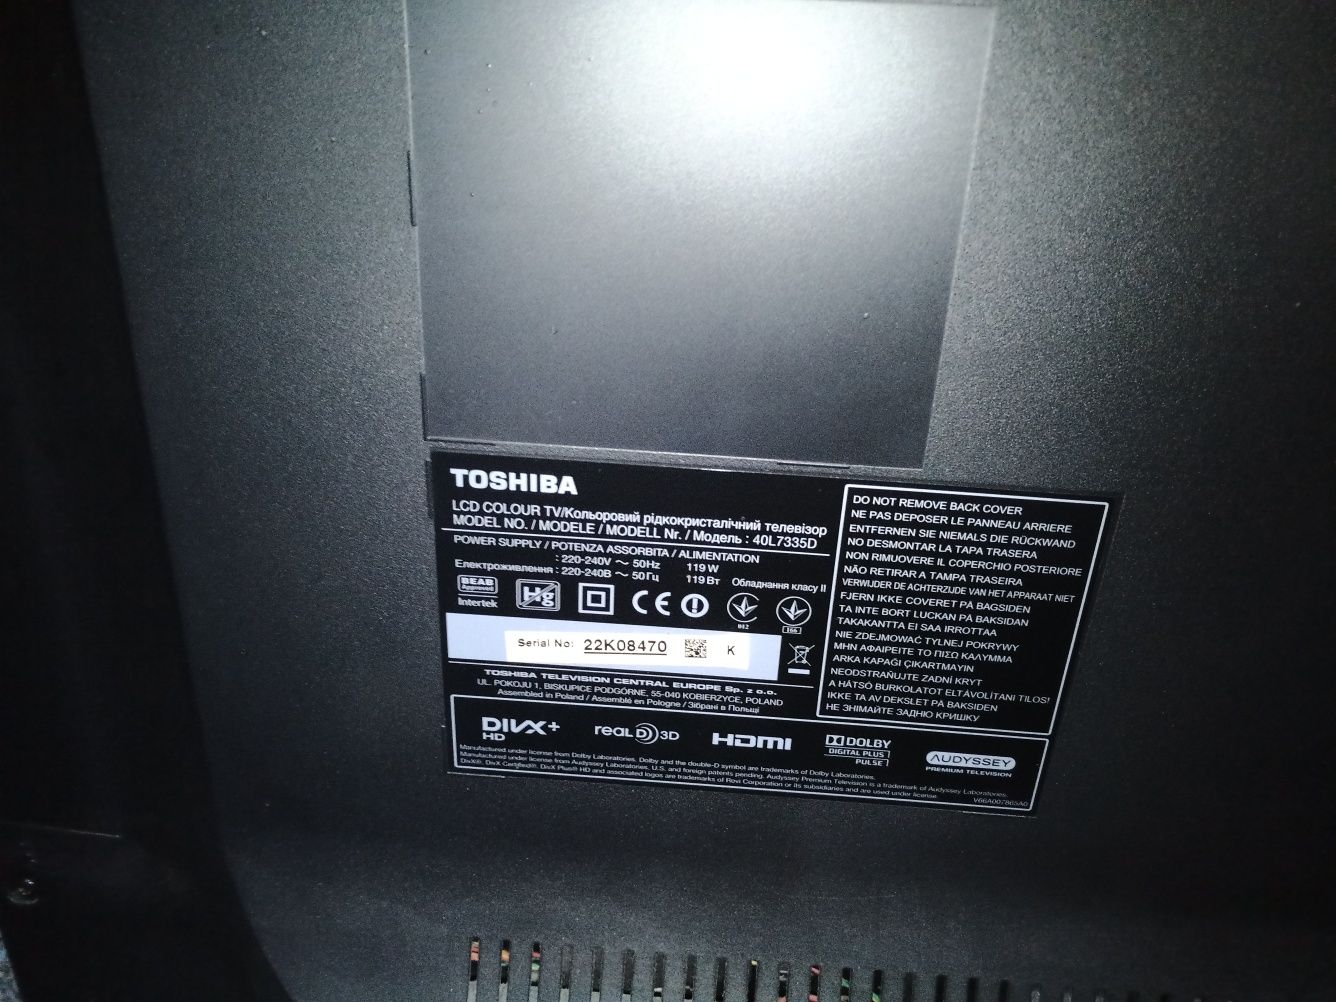 Toshiba 40L7335 model 3d po burzy sprawna matryca